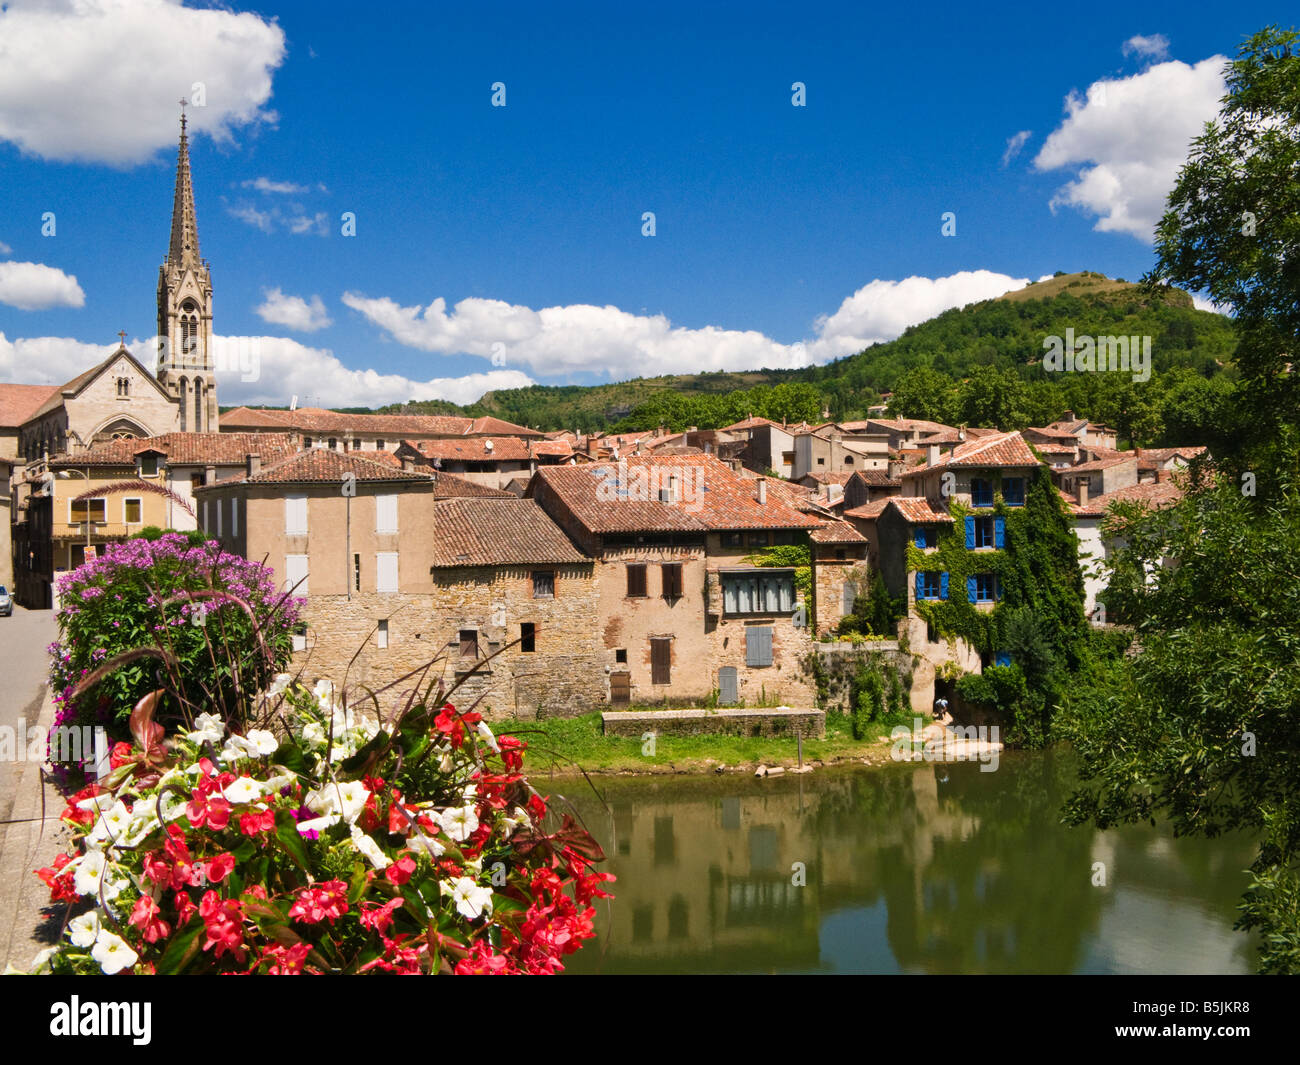 St. Antonin Noble Val am Fluss Aveyron, Tarn et Garonne, Frankreich Stockfoto